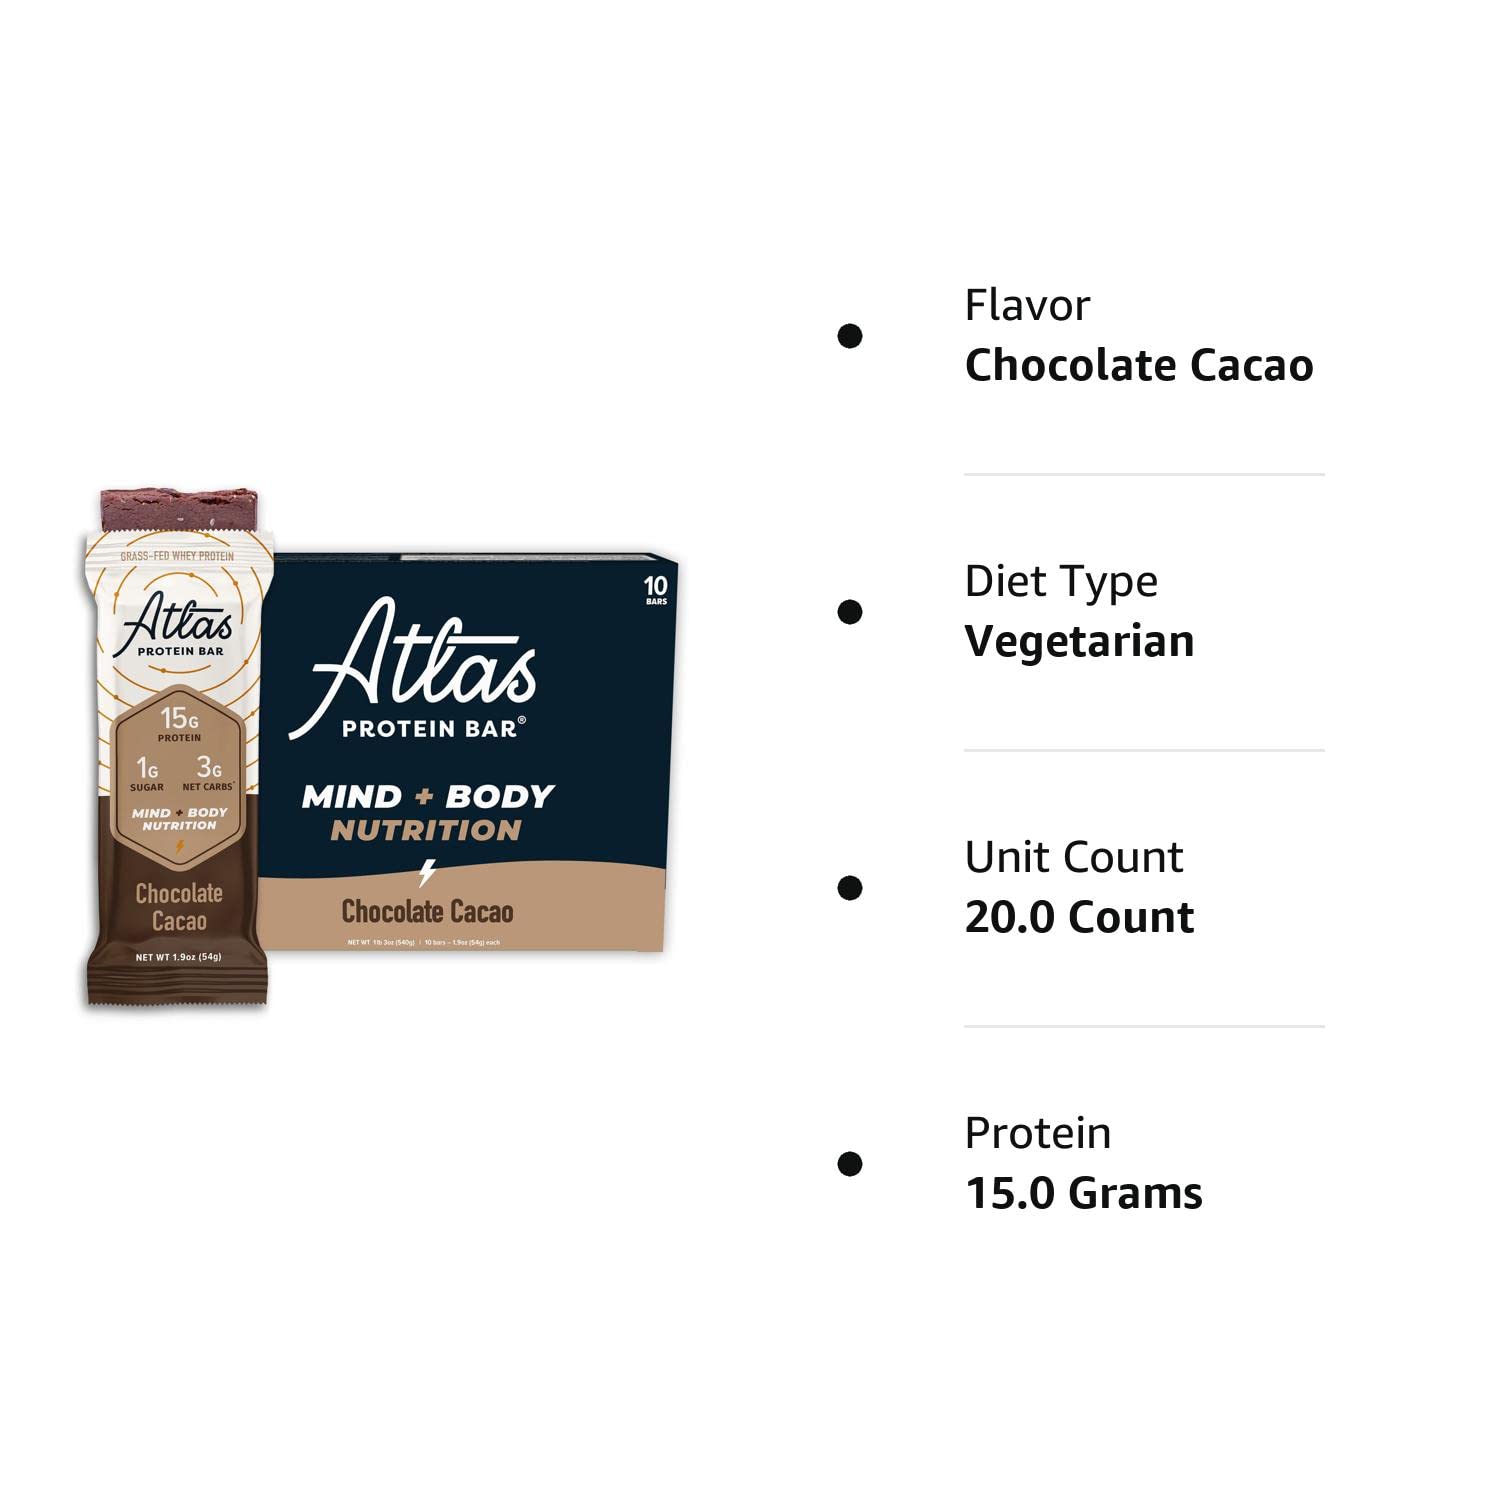 Atlas Protein Bar, 20g Protein, 1g Sugar, Clean Ingredients, Gluten Free (Dark Chocolate Almond, 12 Count (Pack of 2))